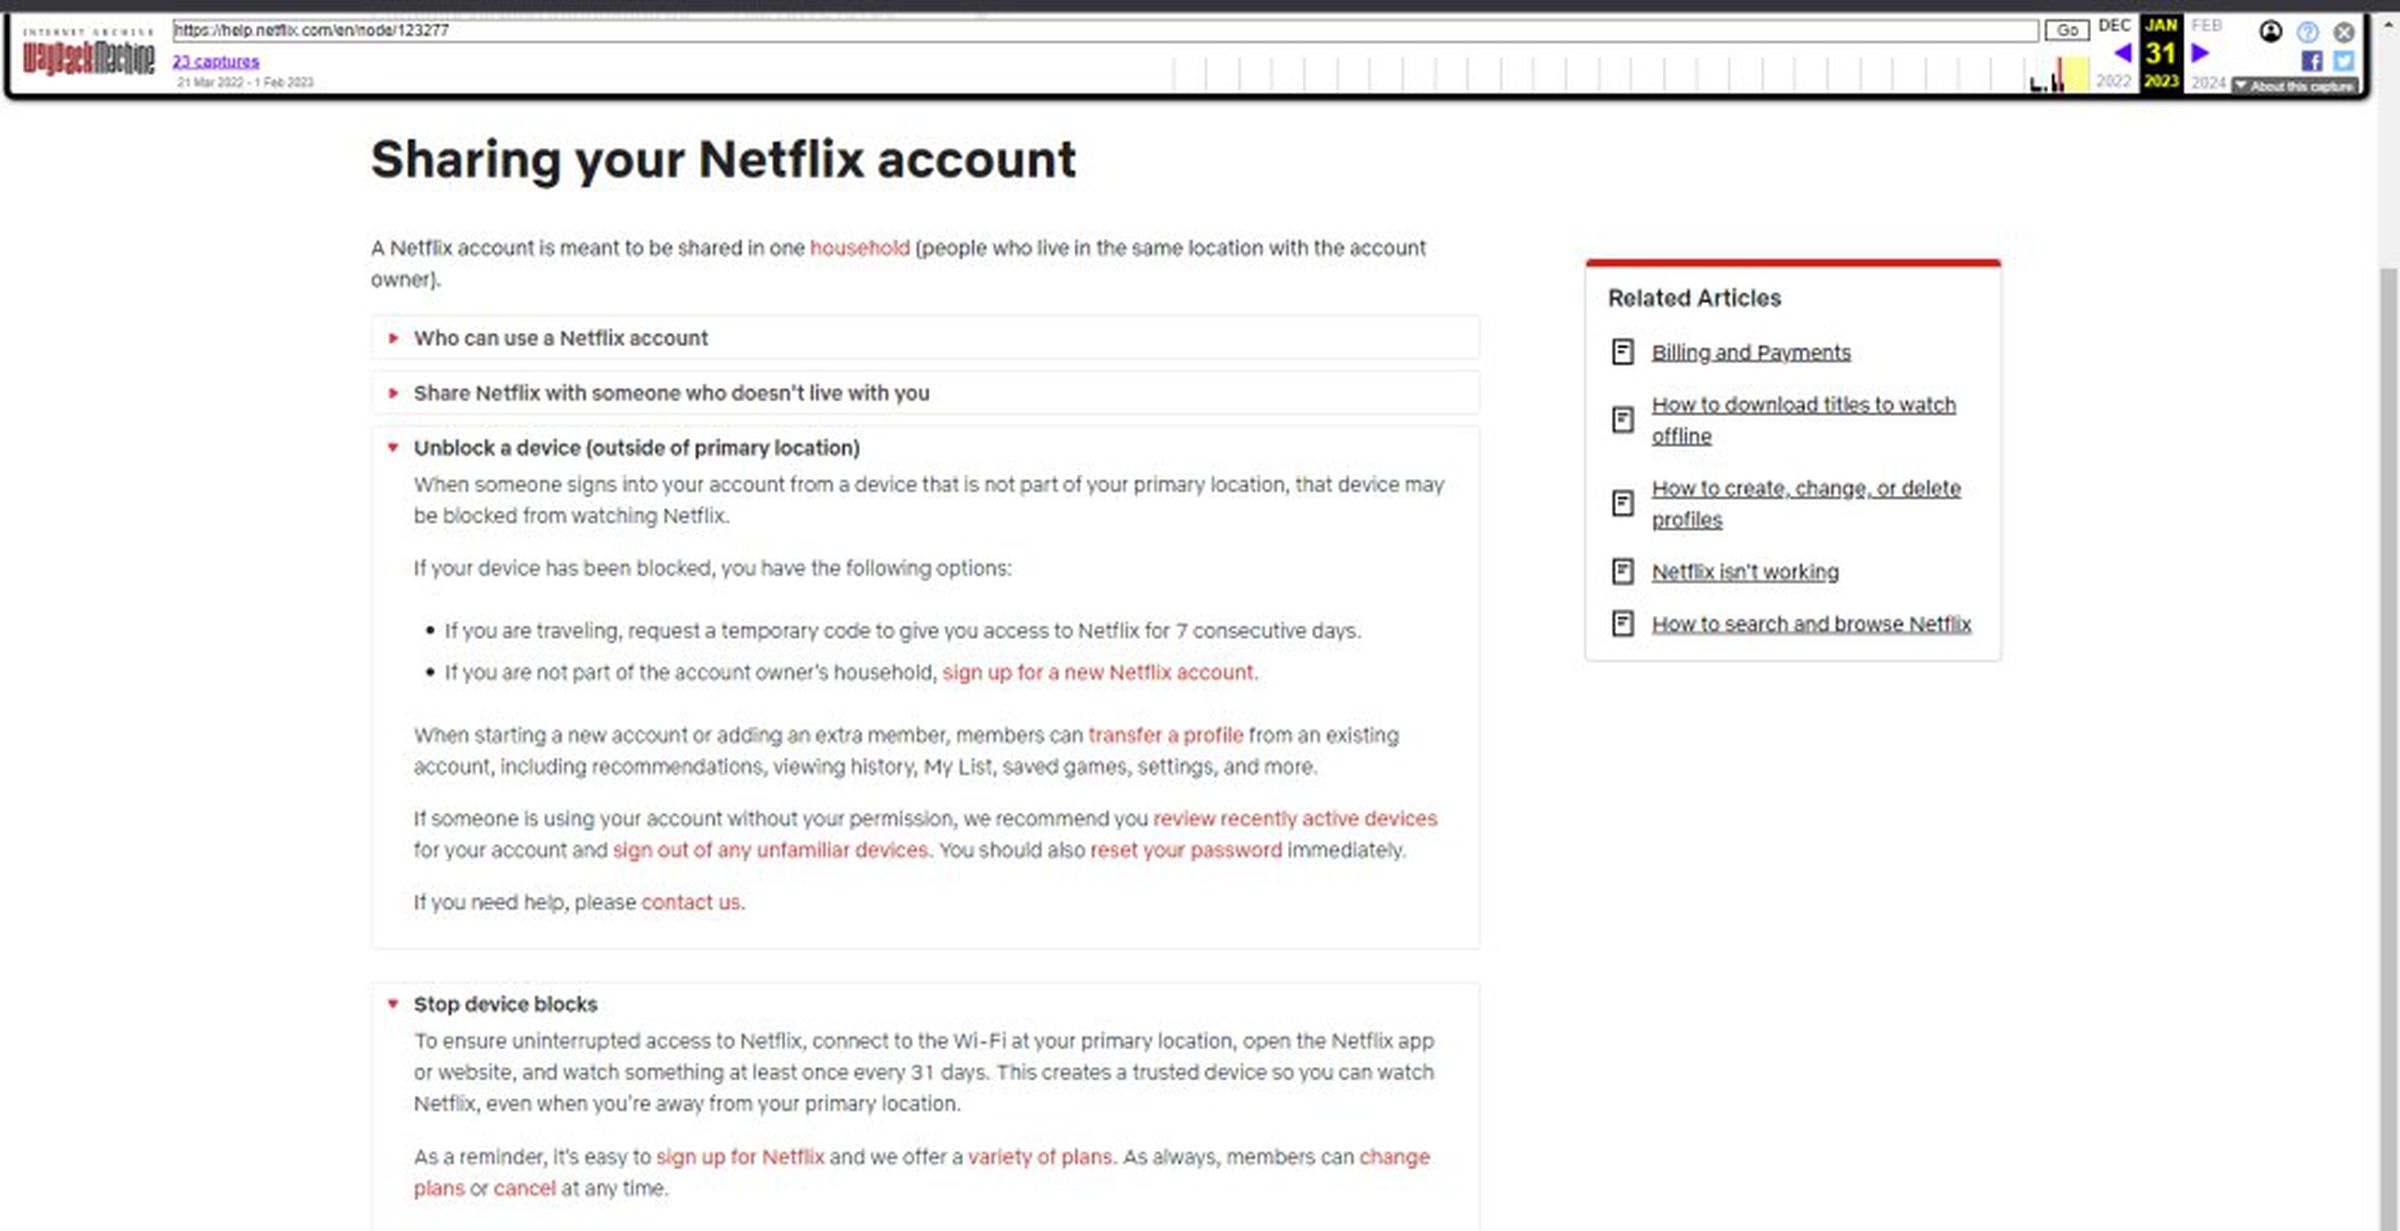 Die archivierte Support-Seite besagt, dass Netflix ein Gerät blockieren kann 